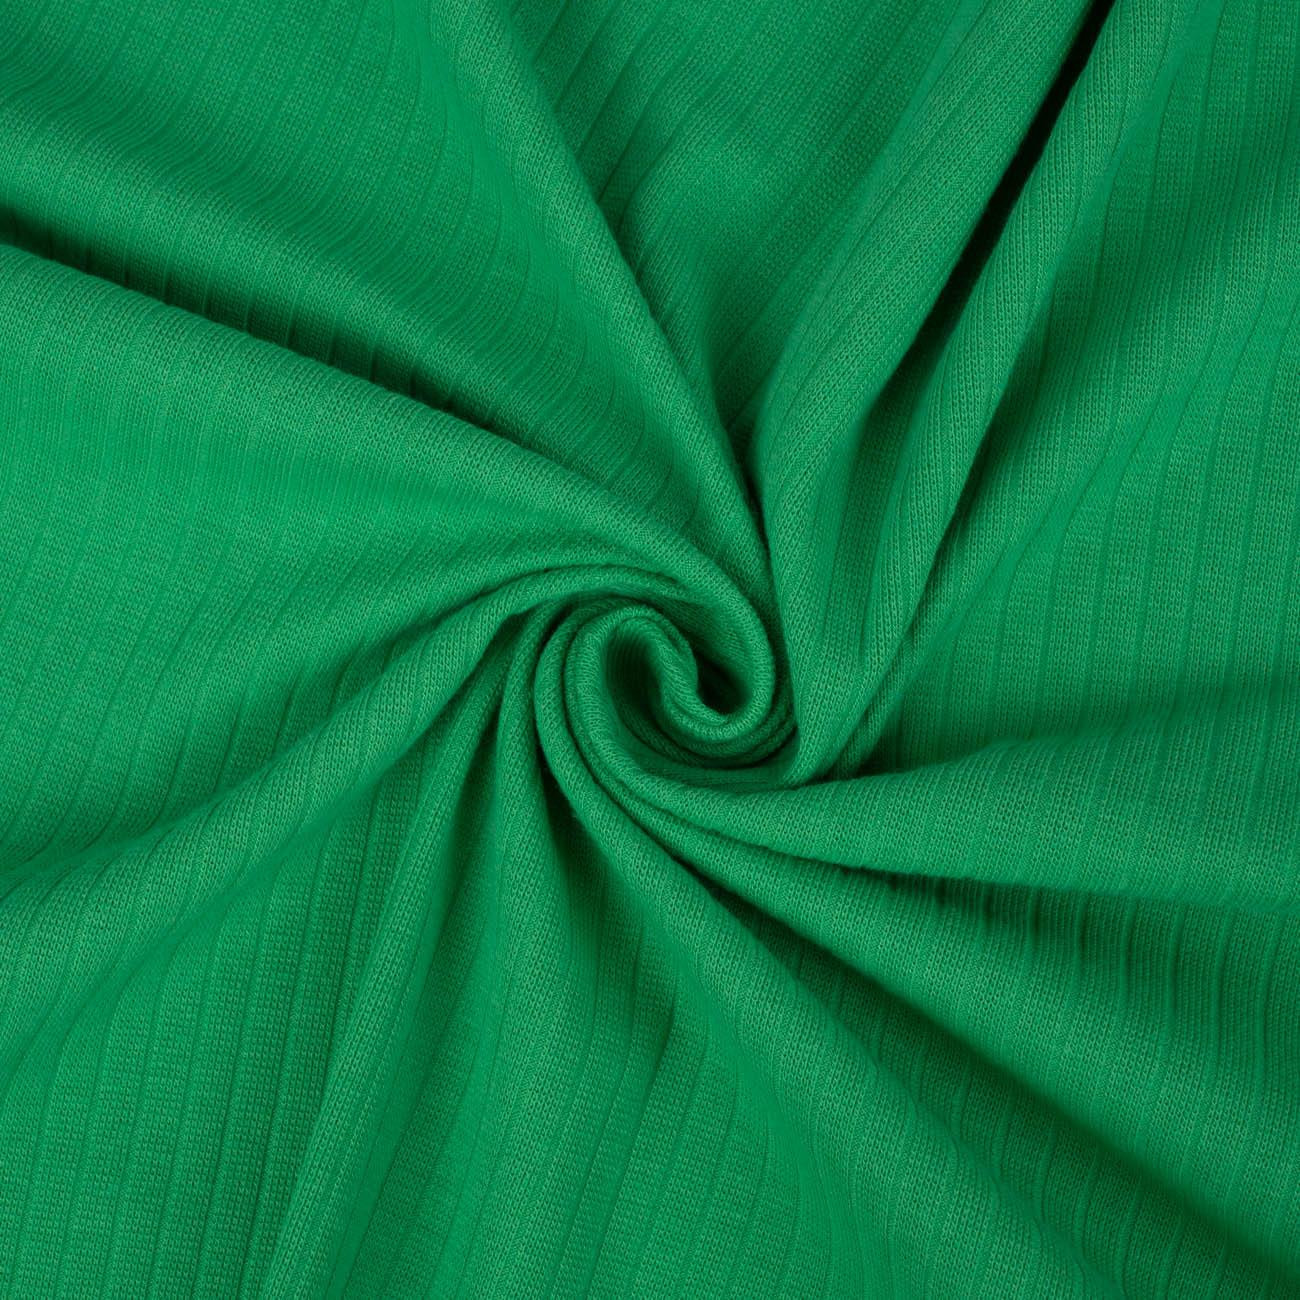 GREEN - Thin ribbed knit